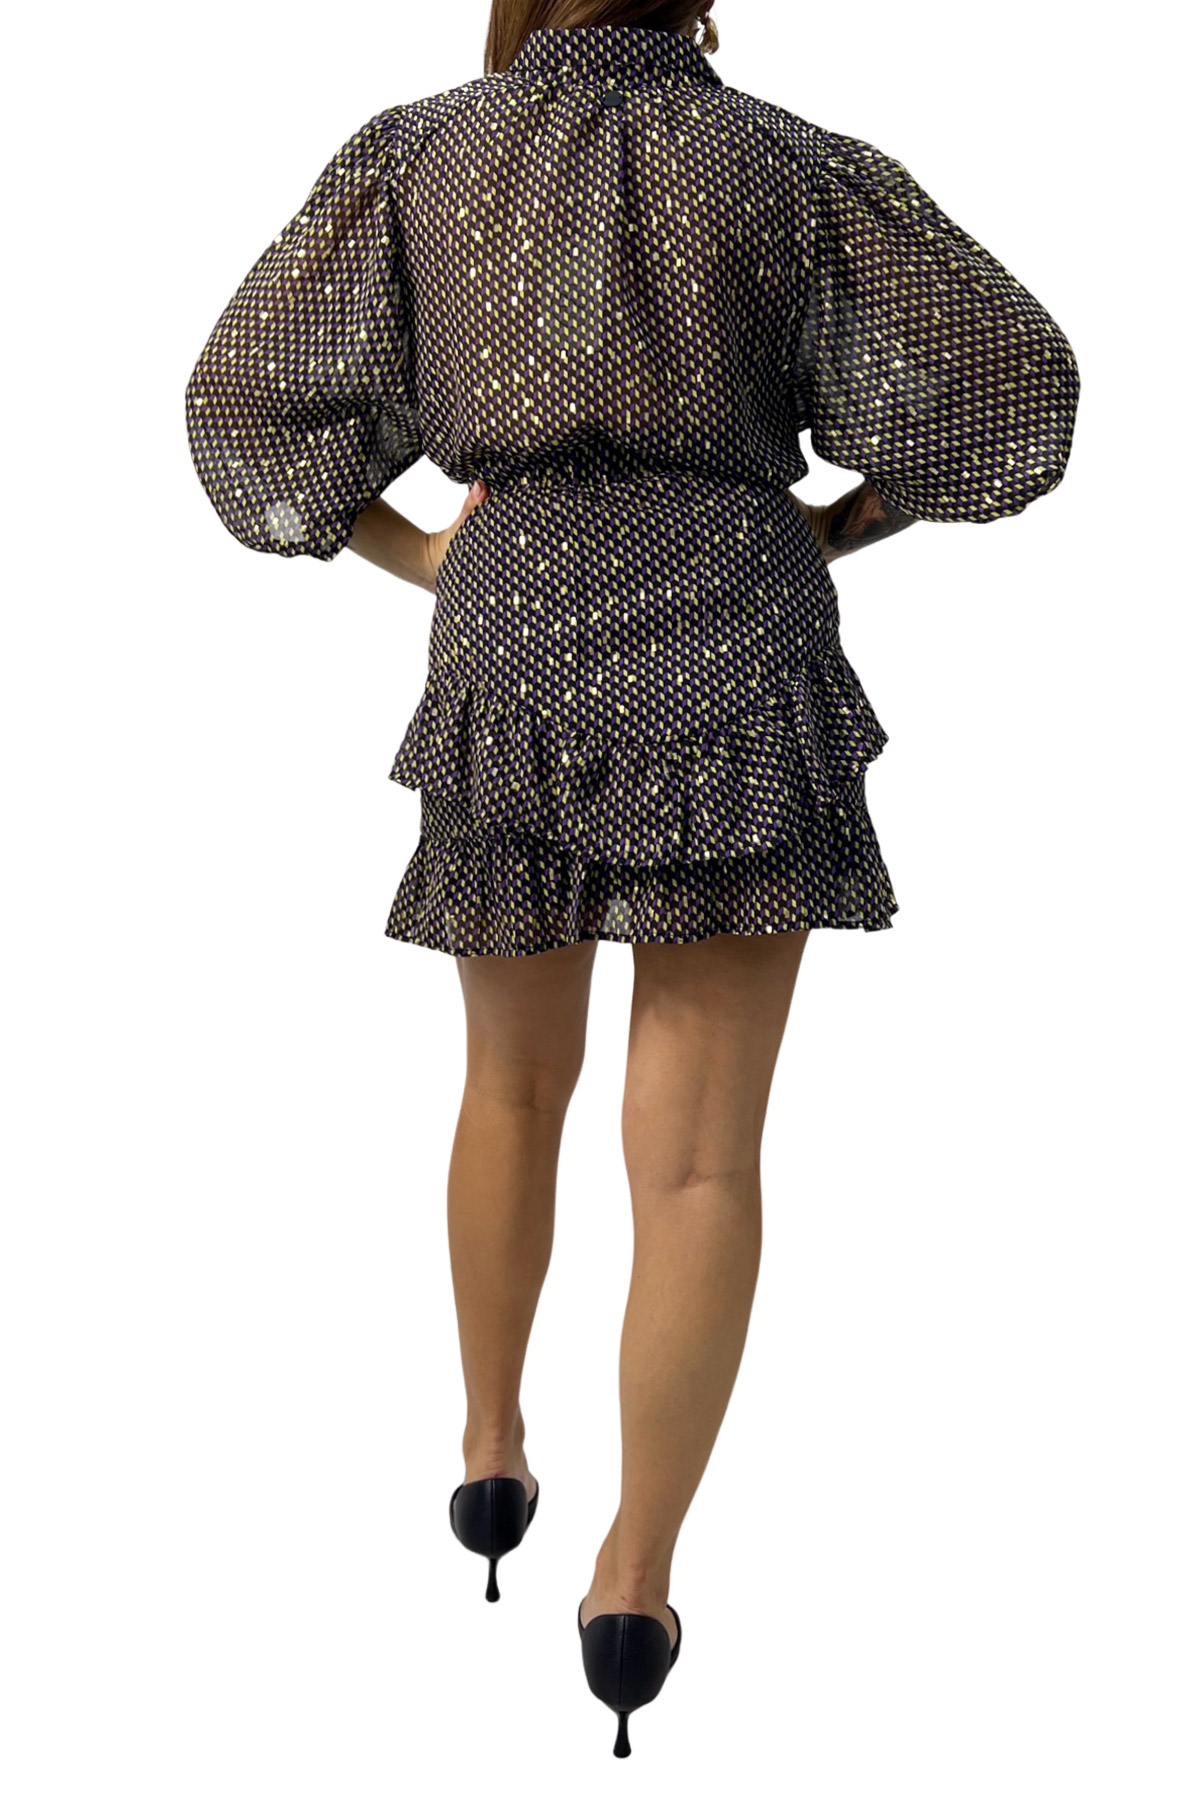 Camicia donna manica palloncino tre quarti fantasia con bottoncini in tessuto chiffon